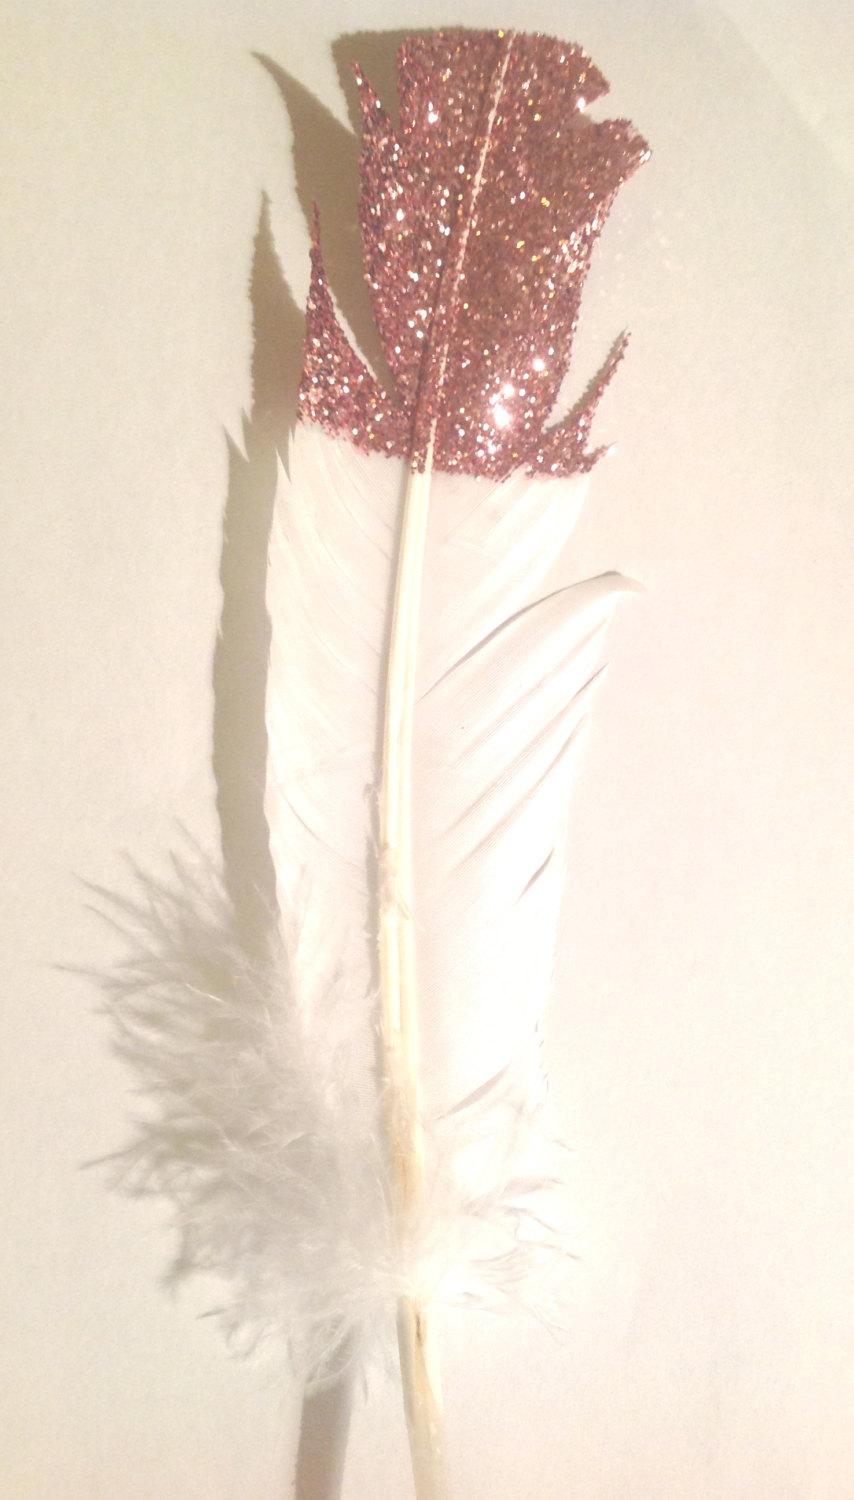 Hochzeit - feather garland with pink glitter tips, wedding decoration, Feather decor, glitter, bohemian decor, alternative wedding, boho garland, pink